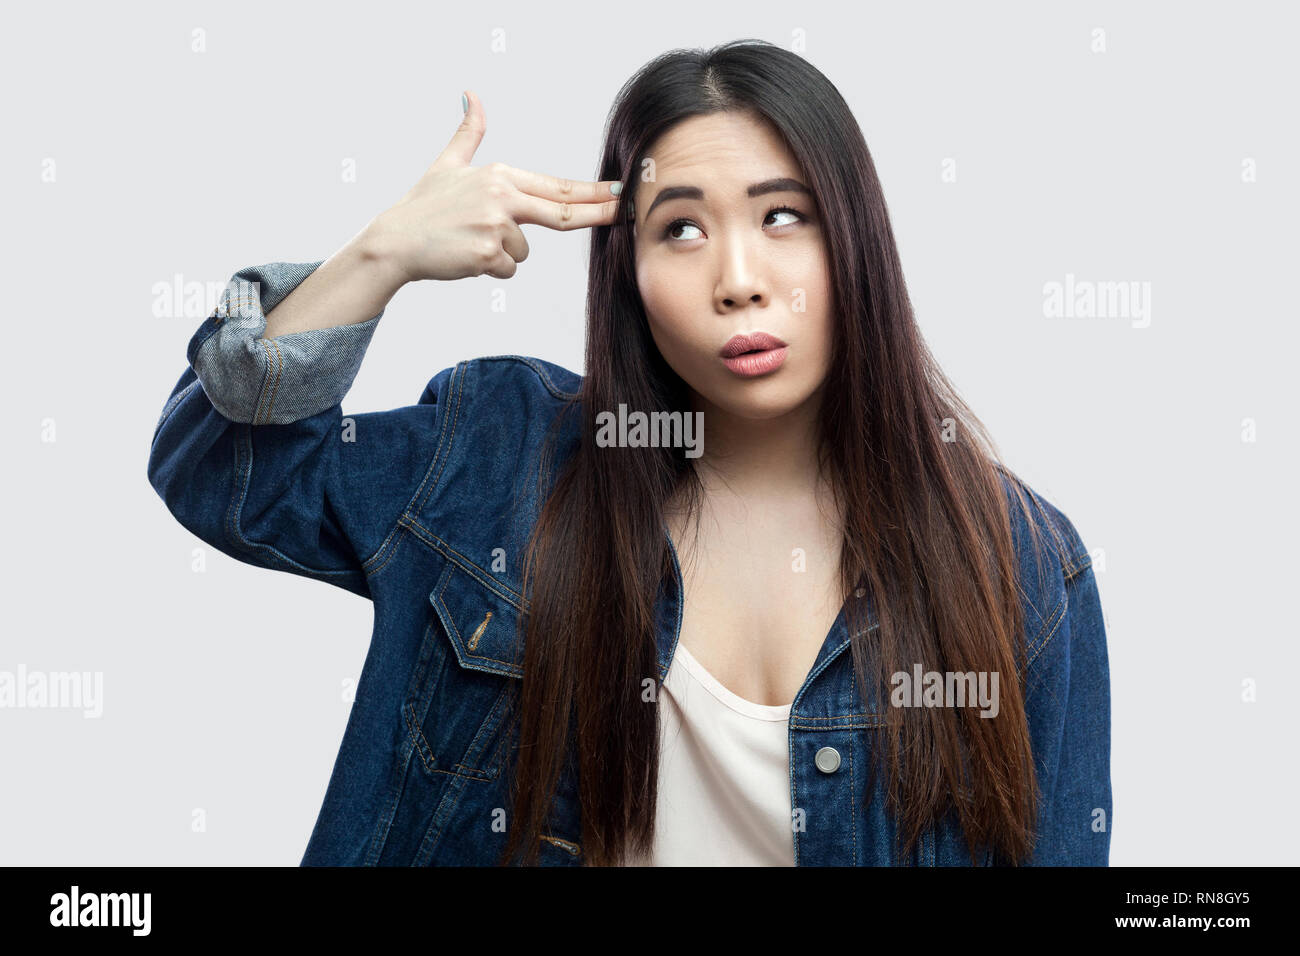 Portrait von einsamen gedrückt schöne Brünette asiatische junge Frau in lässigem Blue Denim Jacke mit Make-up stehend mit Gewehr Pistole am Kopf. indoor Stu Stockfoto